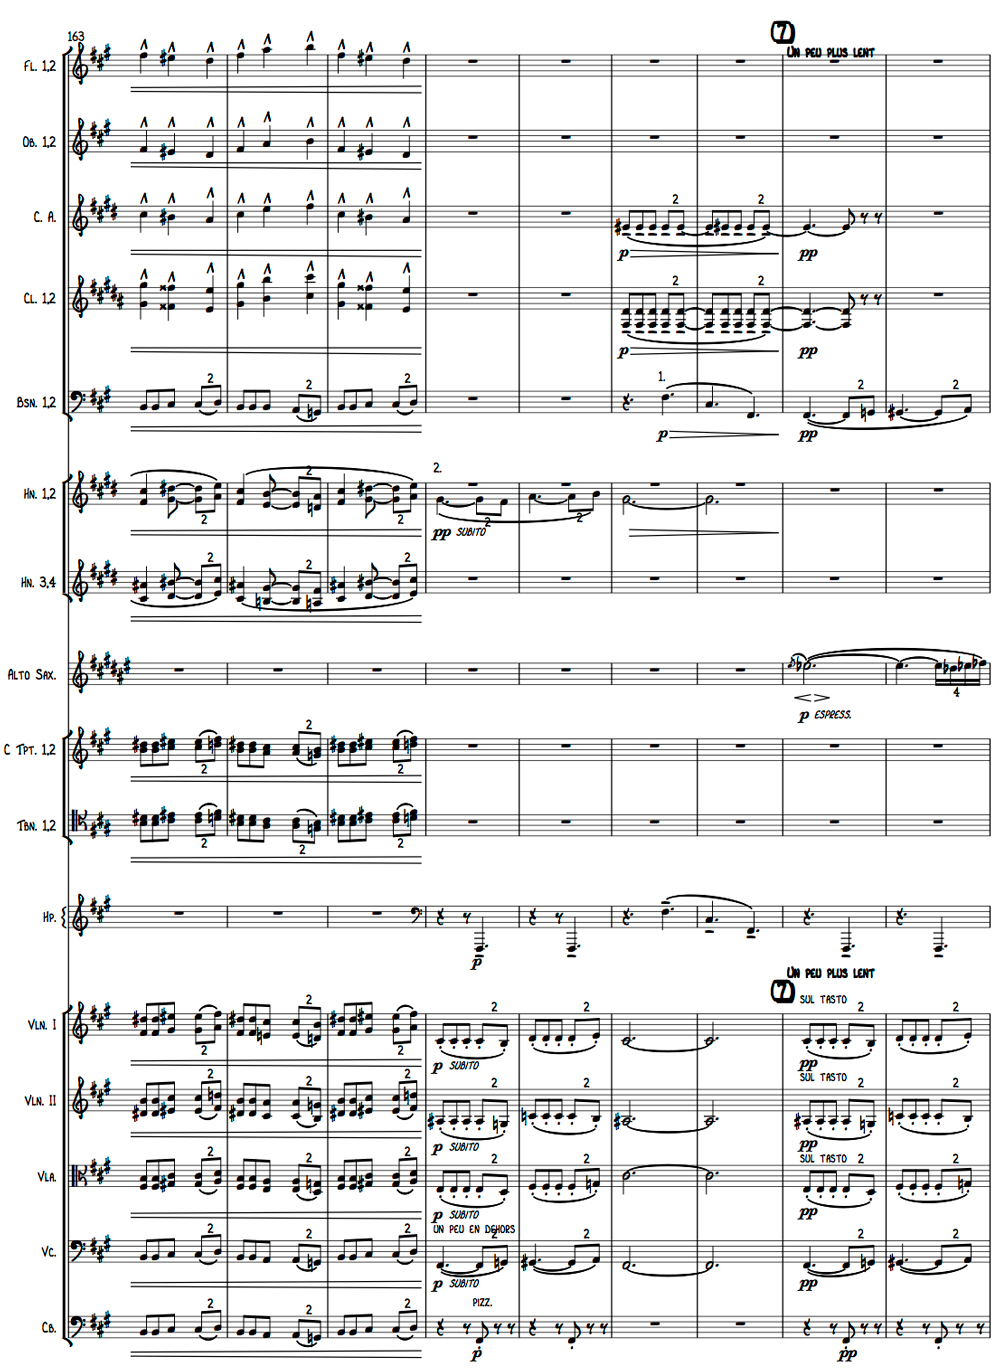 
	Claude Debussy, Esquisse d’une « Rhapsodie mauresque » pour orchestre et saxophone principal, version réorchestrée, mesures 166-172.